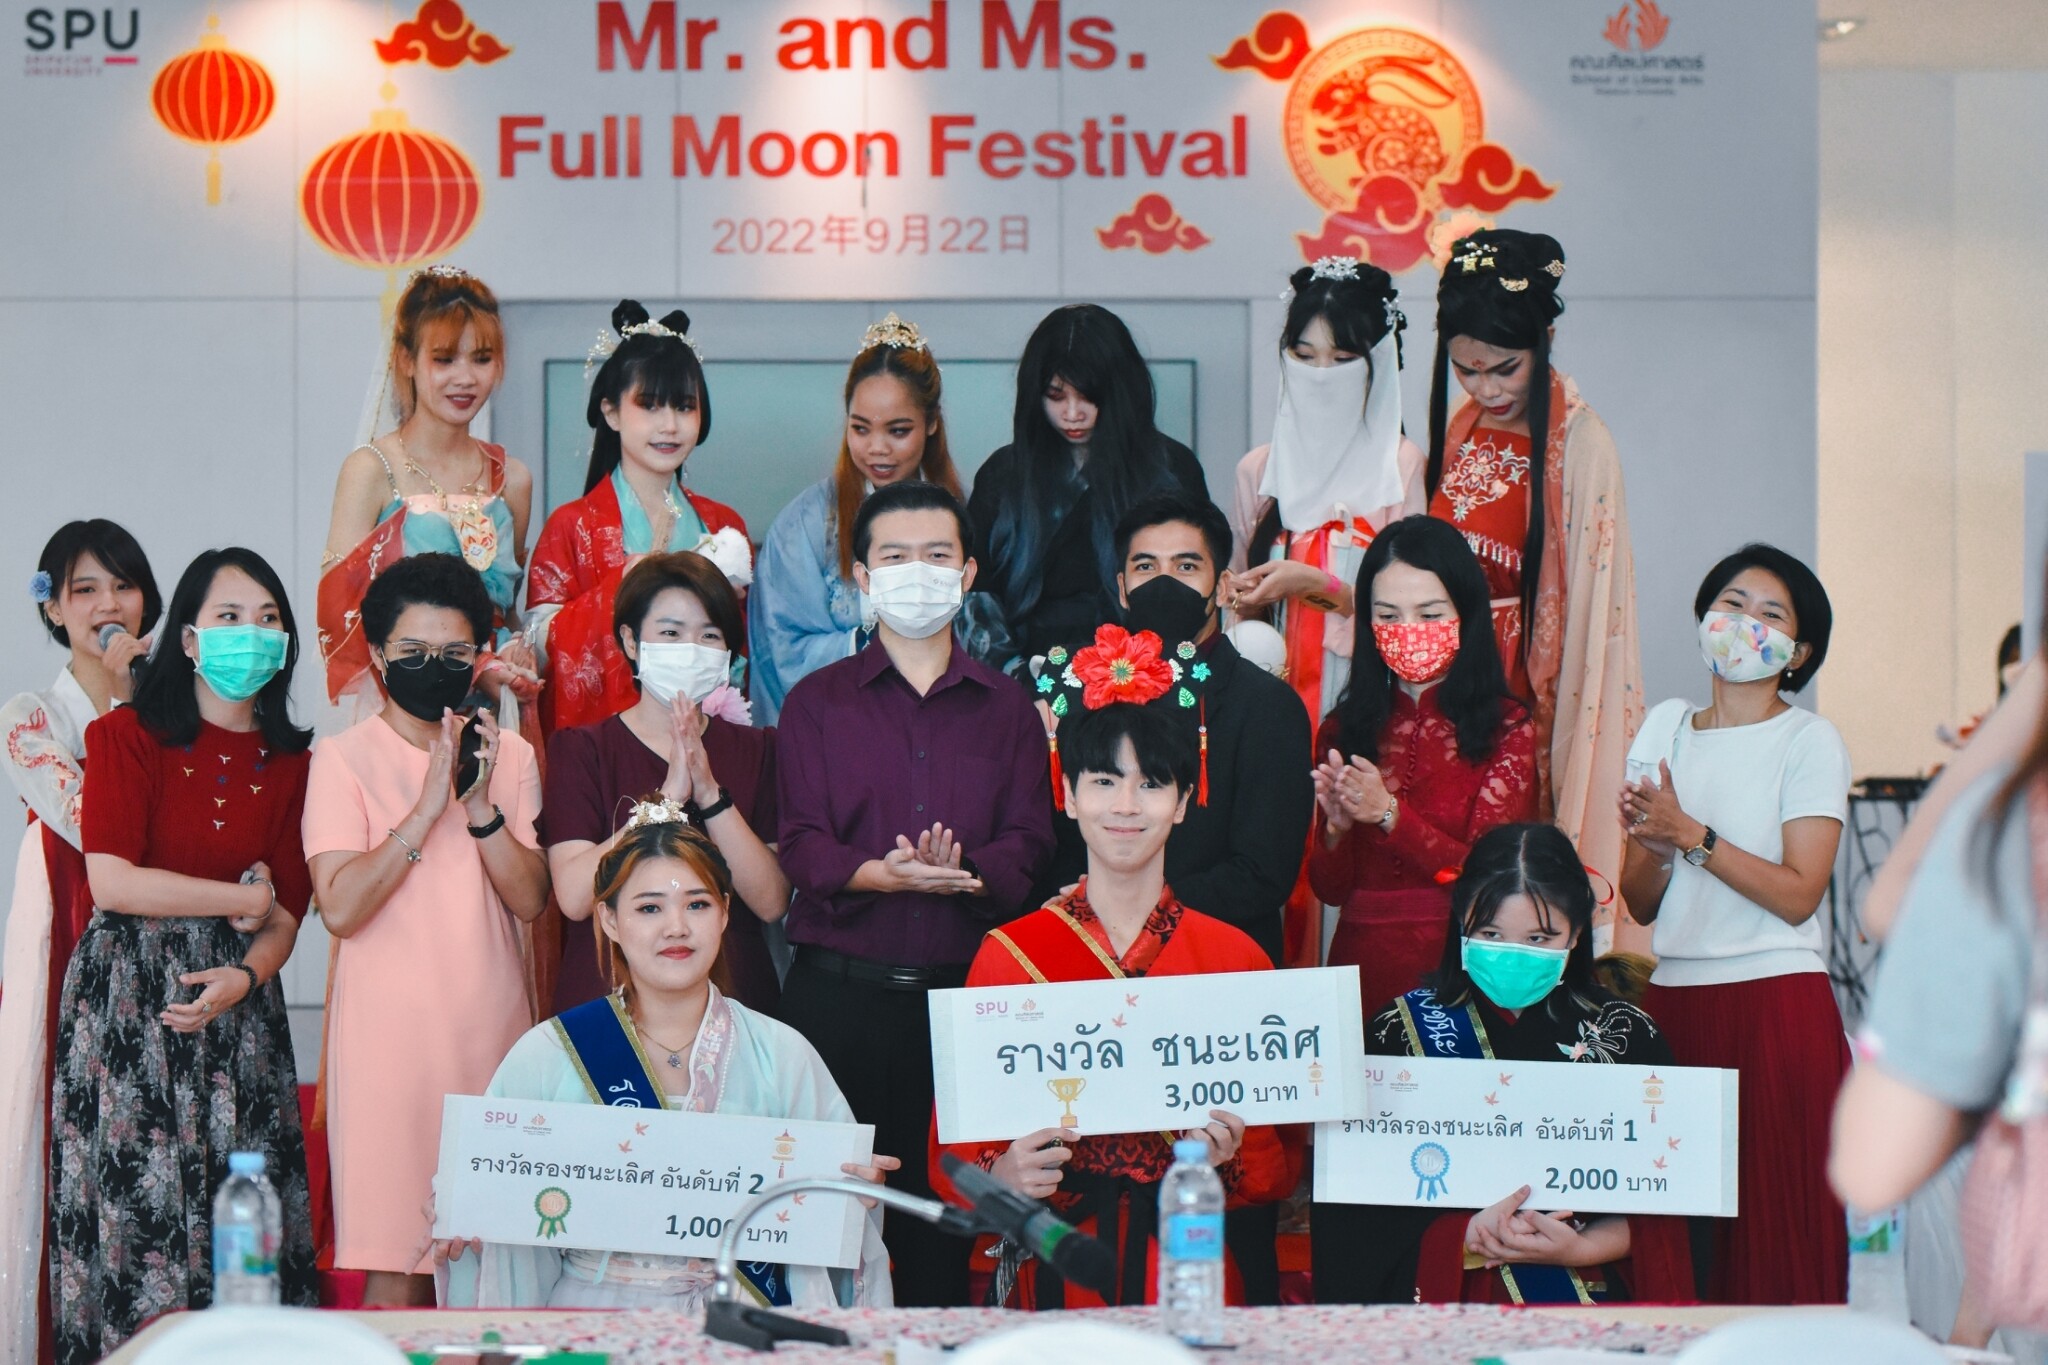 เรียนรู้ภาษาและวัฒนธรรมจีน ในแบบ DEK ภาษาจีนและการสื่อสารธุรกิจ SPU กับโครงการ Mr. and Ms. Full Moon Festival 2022